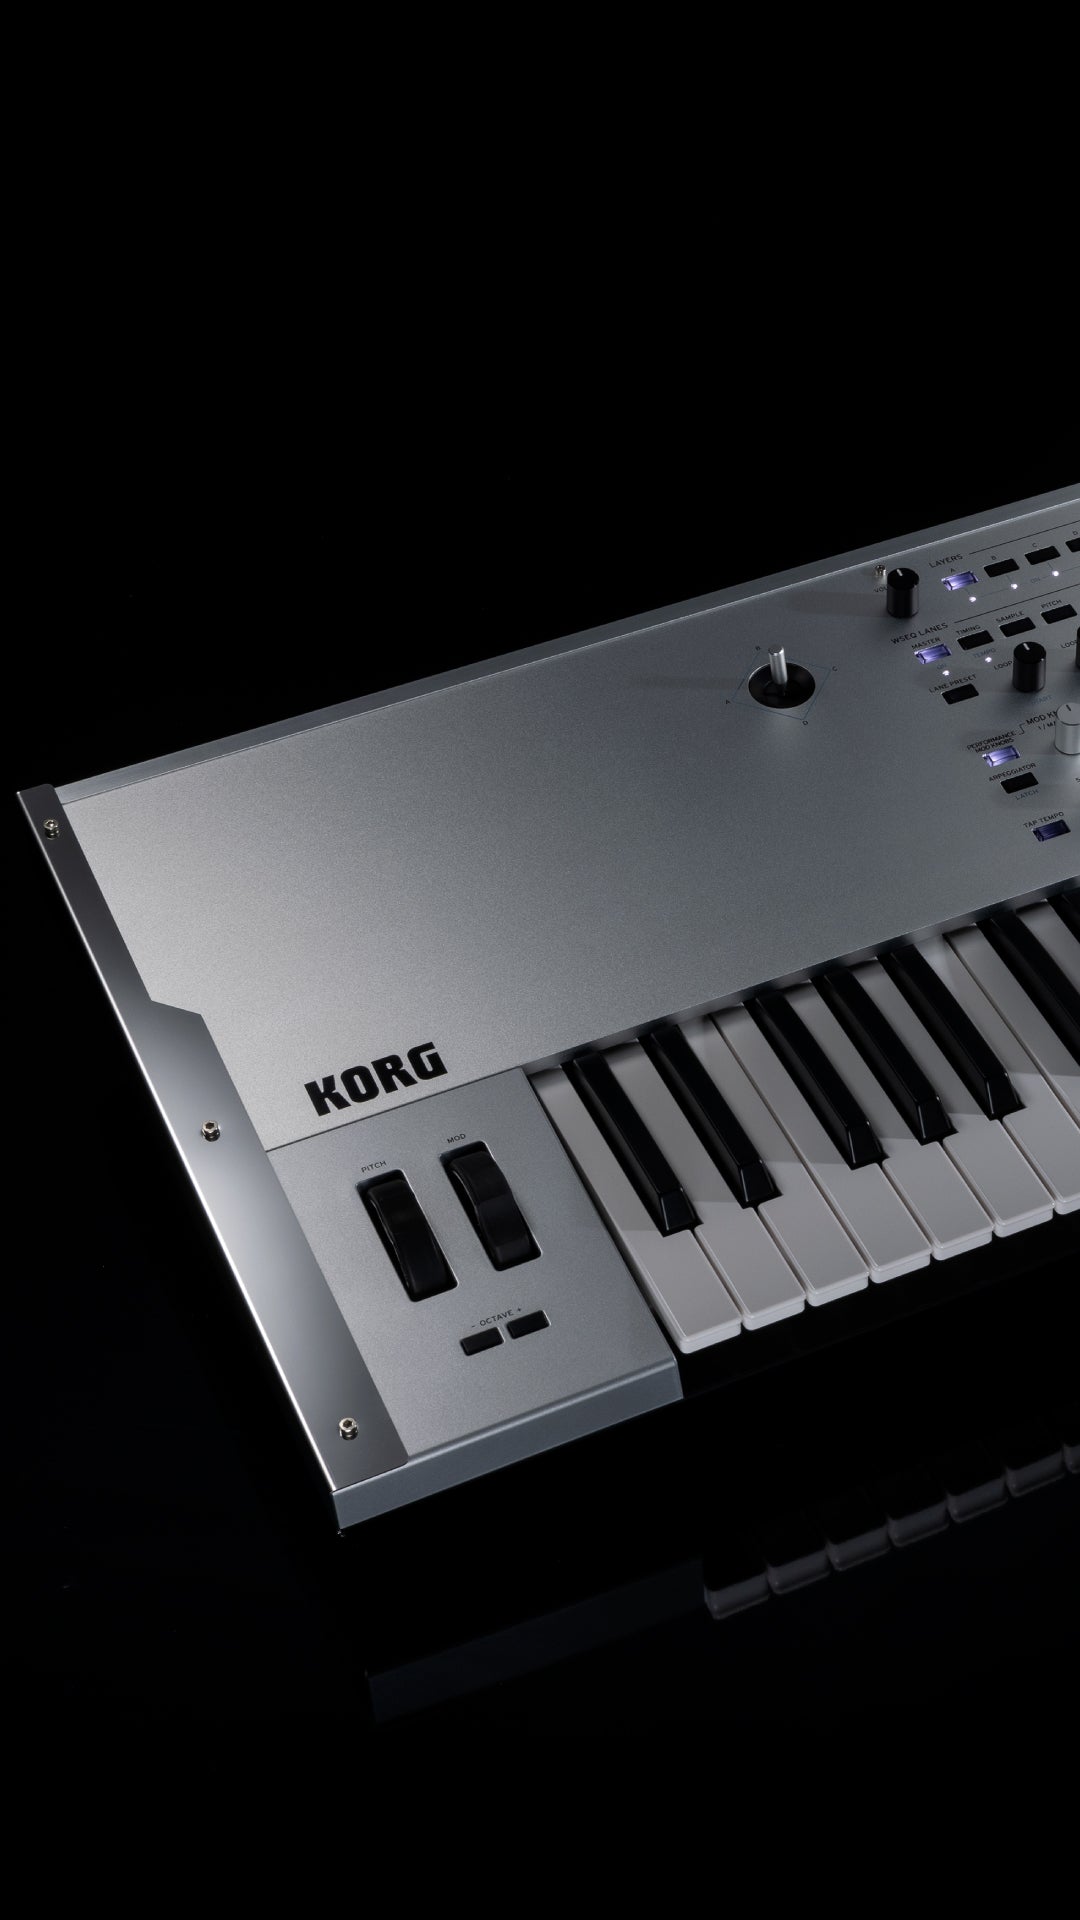 KORG Wavestate SE platinum keyboard